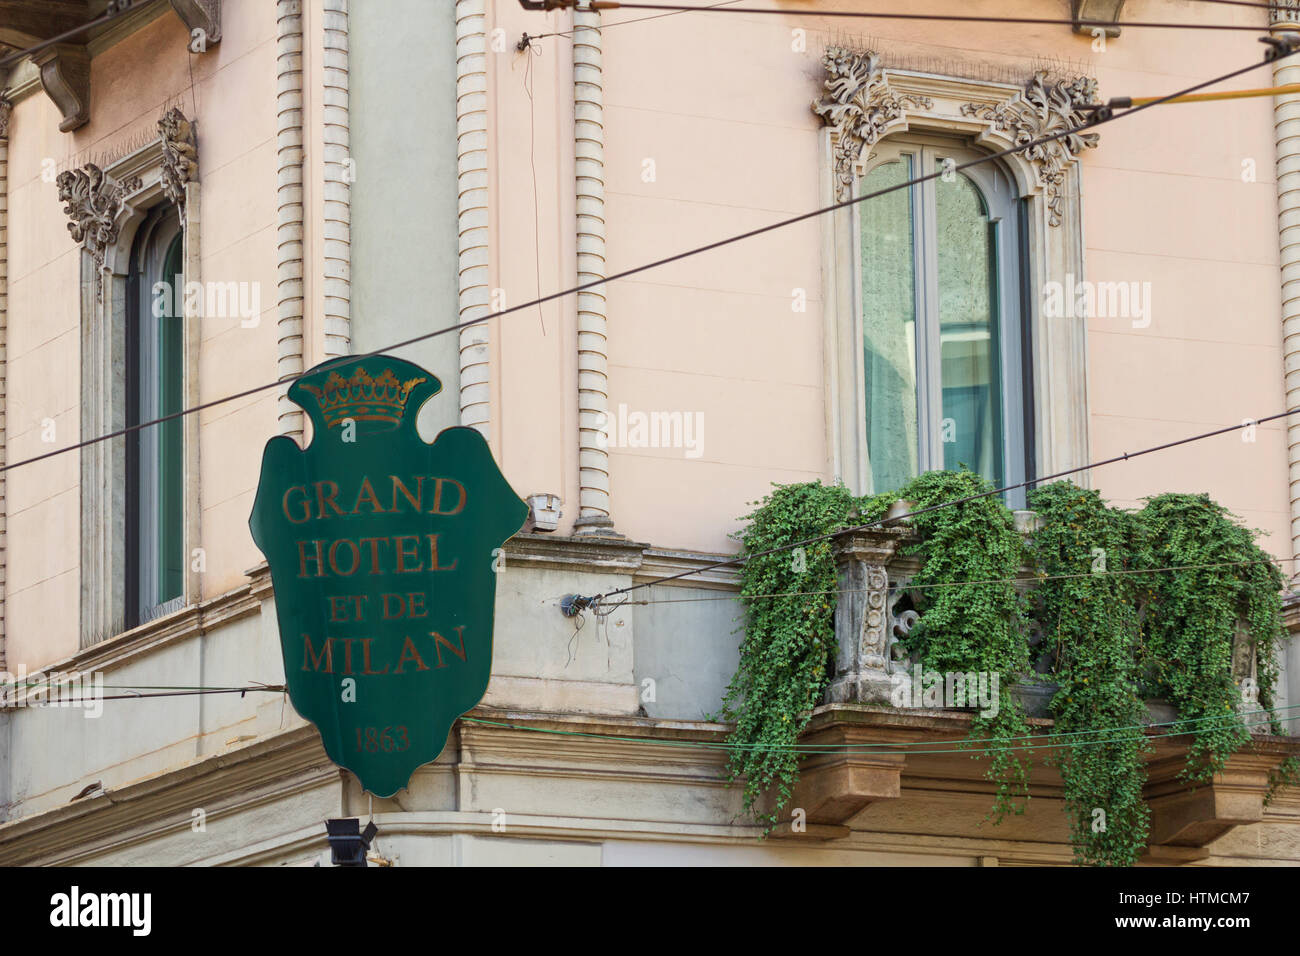 Fenêtres de la suite Giuseppe Verdi où il est décédé en 1901 - Grand Hotel et de Milan, Milan, Italie Banque D'Images